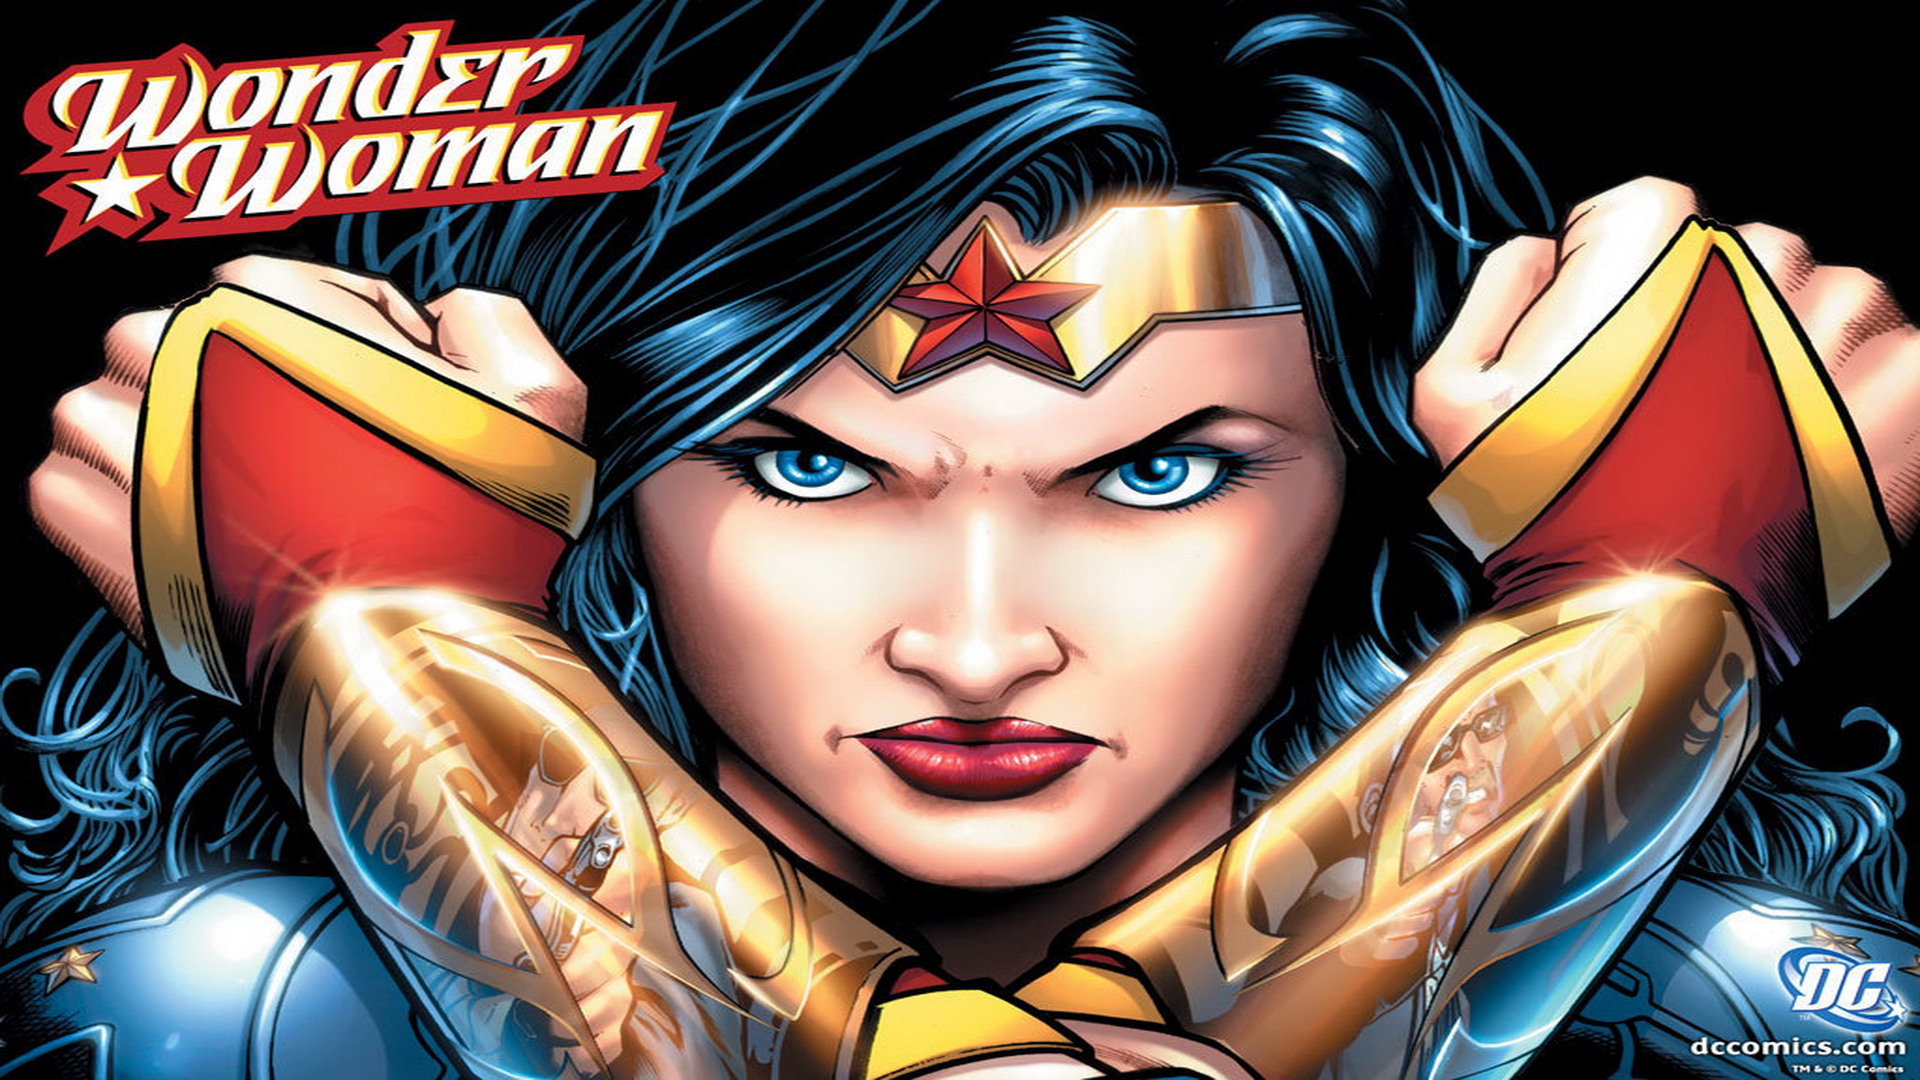 Wonder Woman dc comics 17997940 1024 768jpg